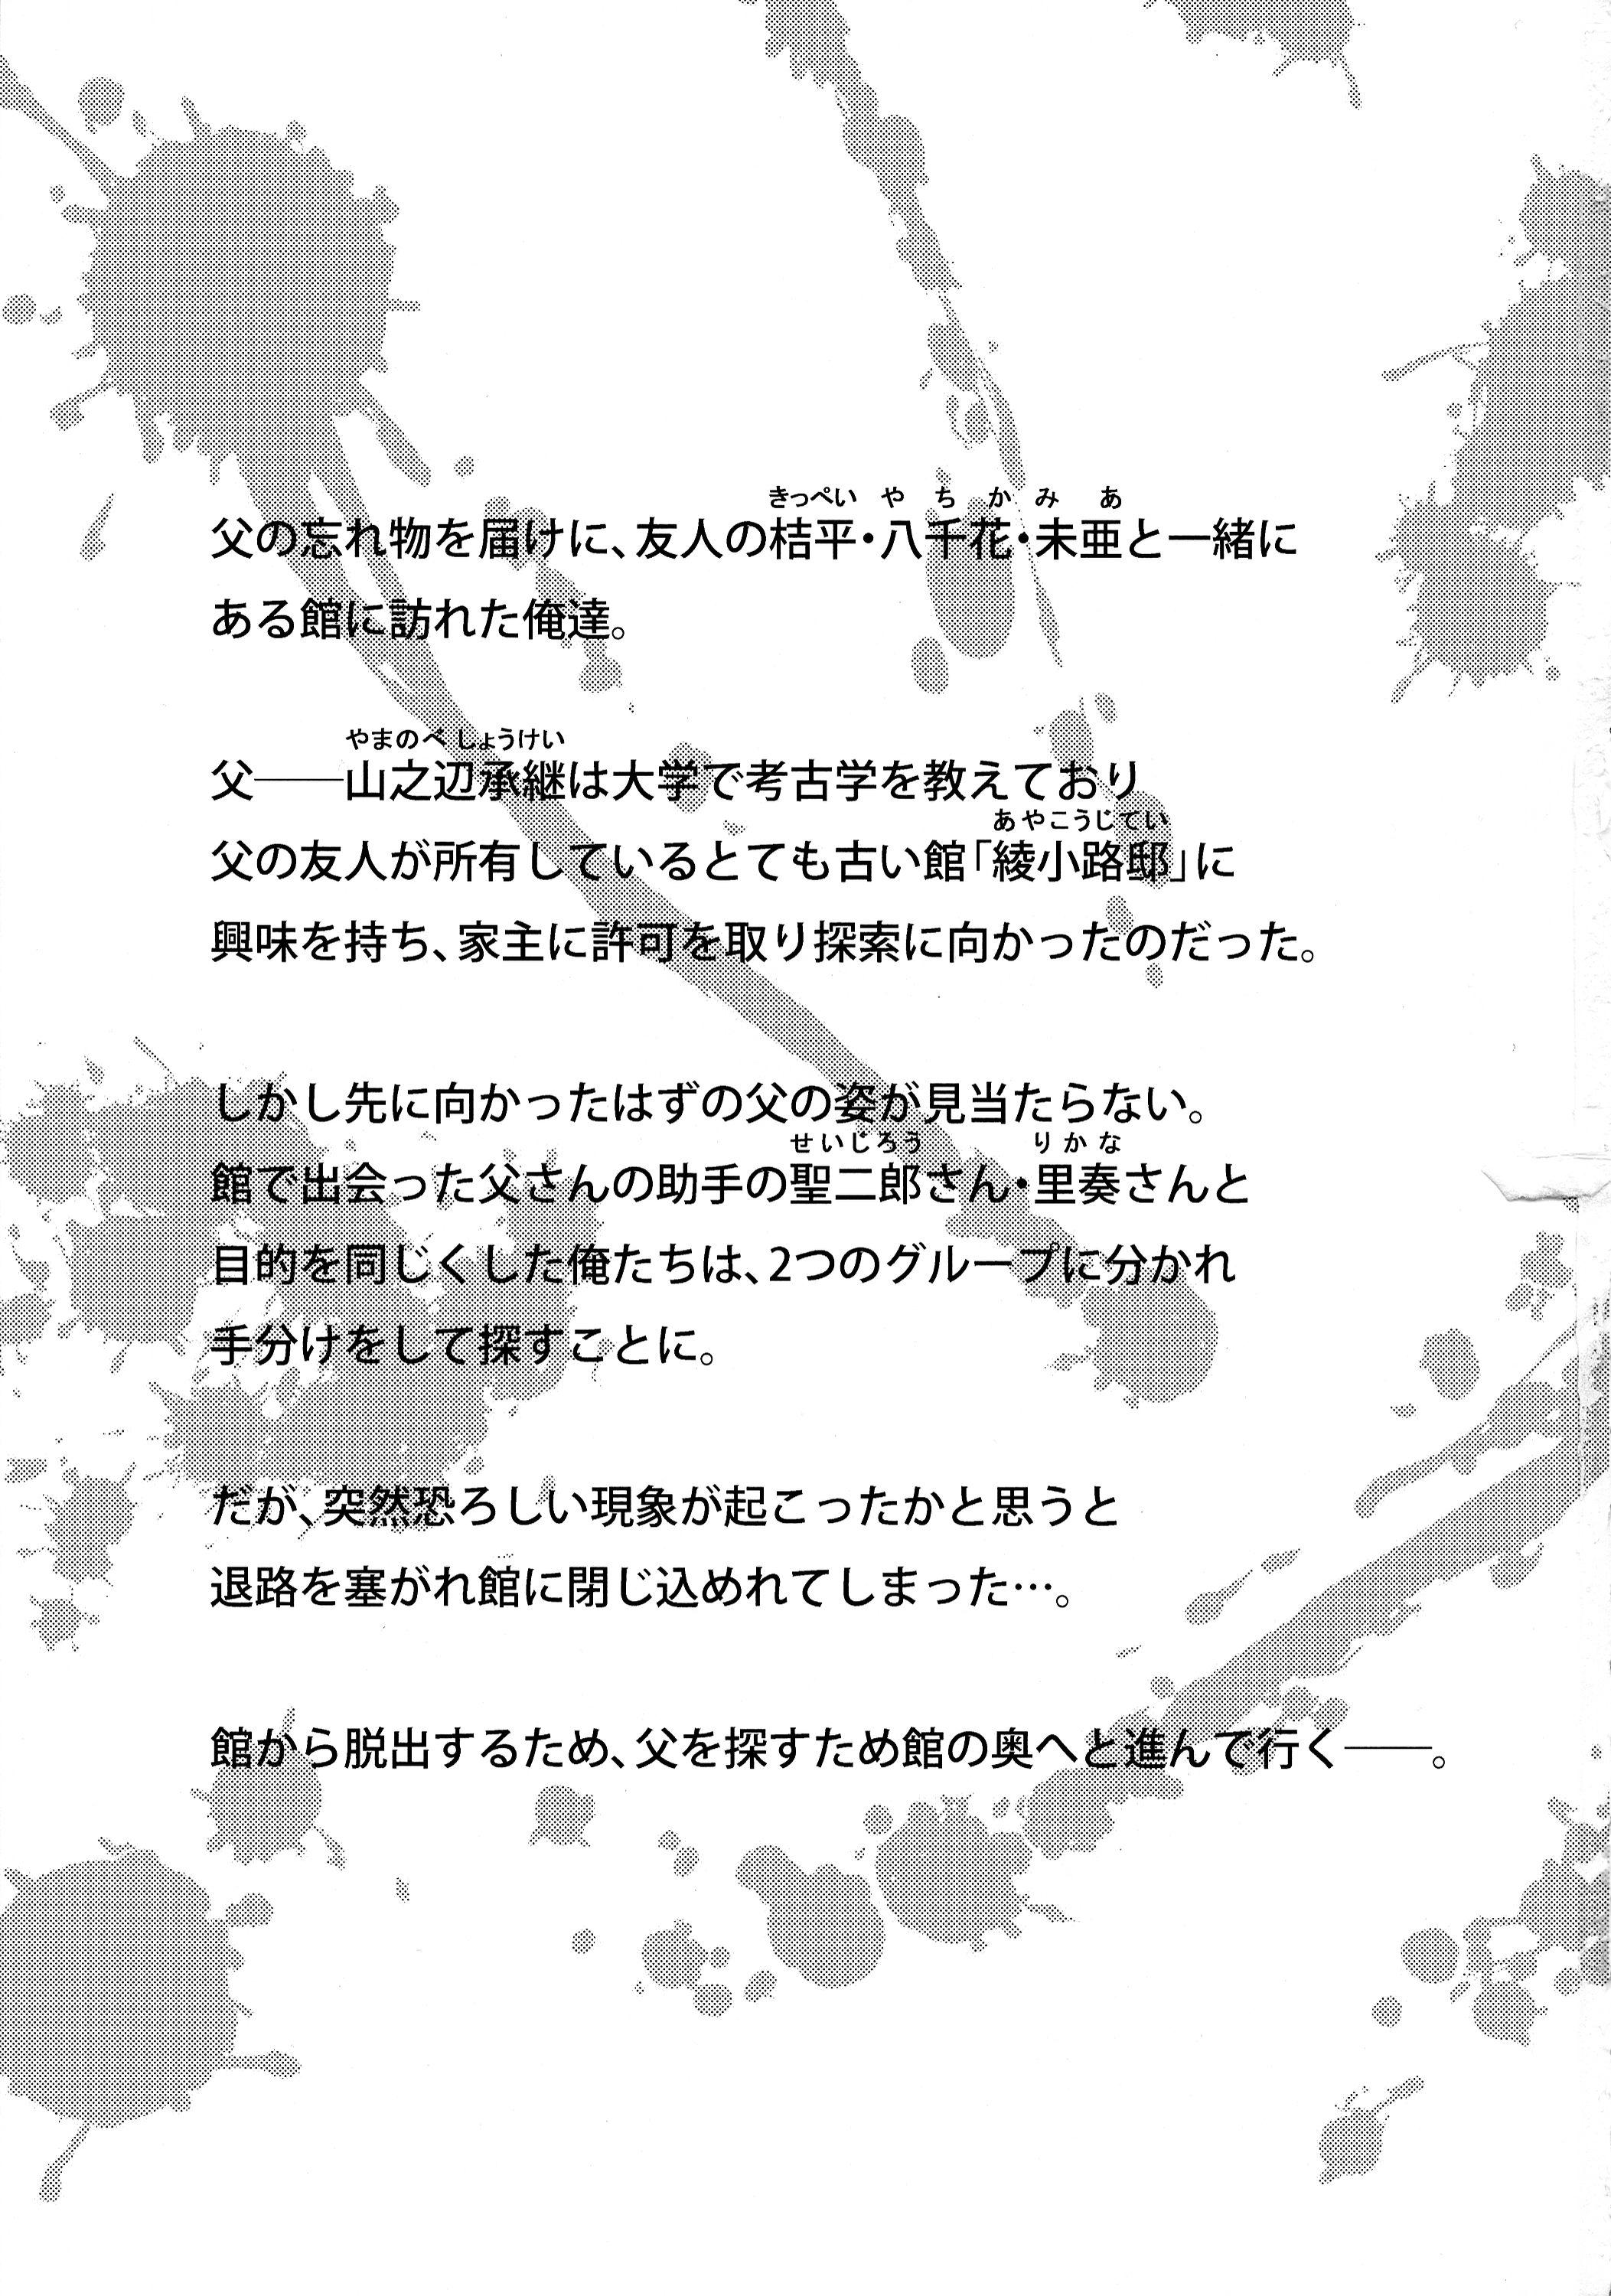 Lez Fuck Futanari ni Naru Kanojo no Aventure - Fukai ni nemuru oujo no abaddon Naked - Page 3